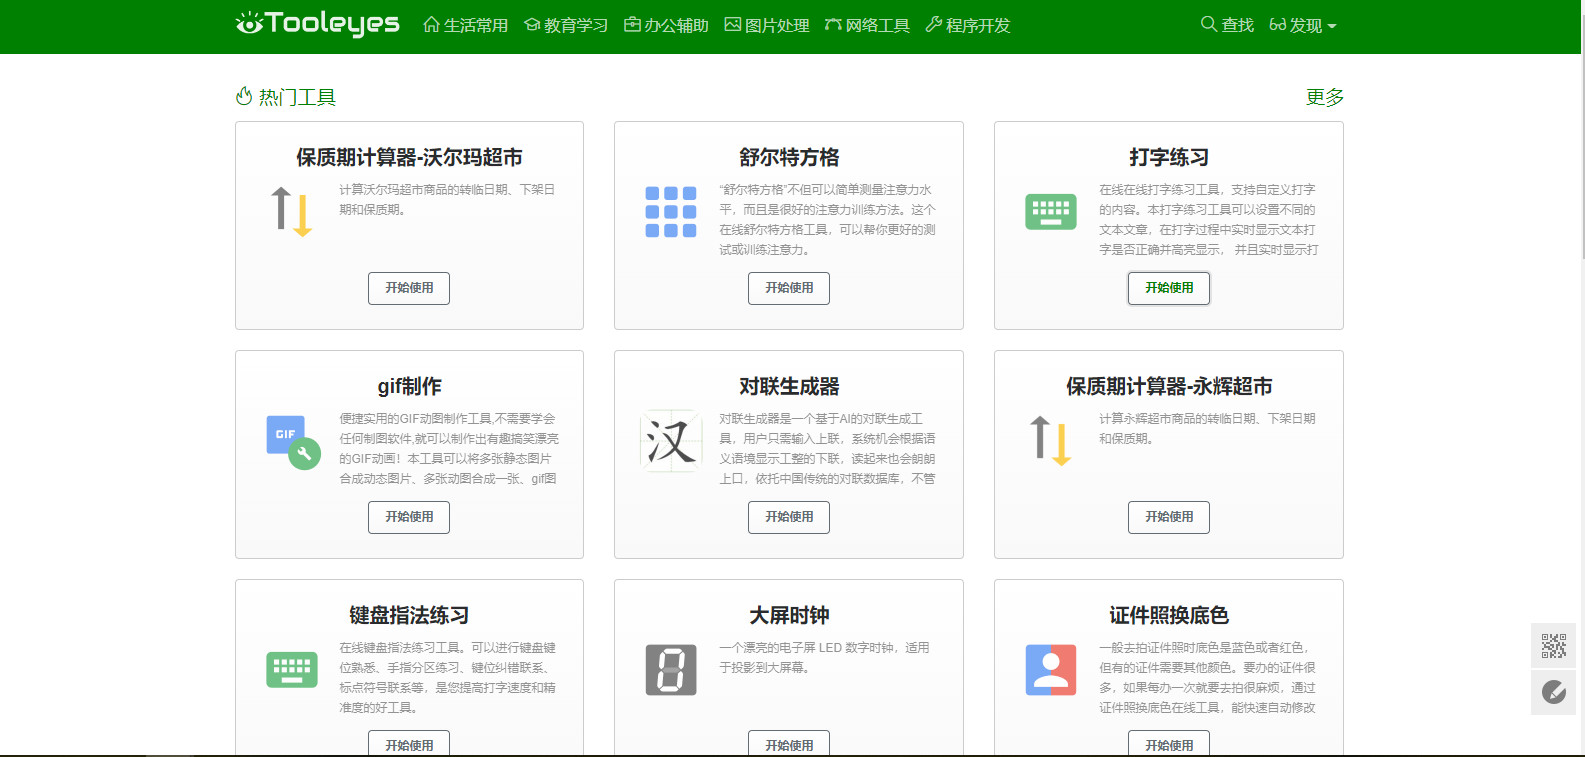 推荐一个珍藏已久的在线工具网站 ---- 中国工具网